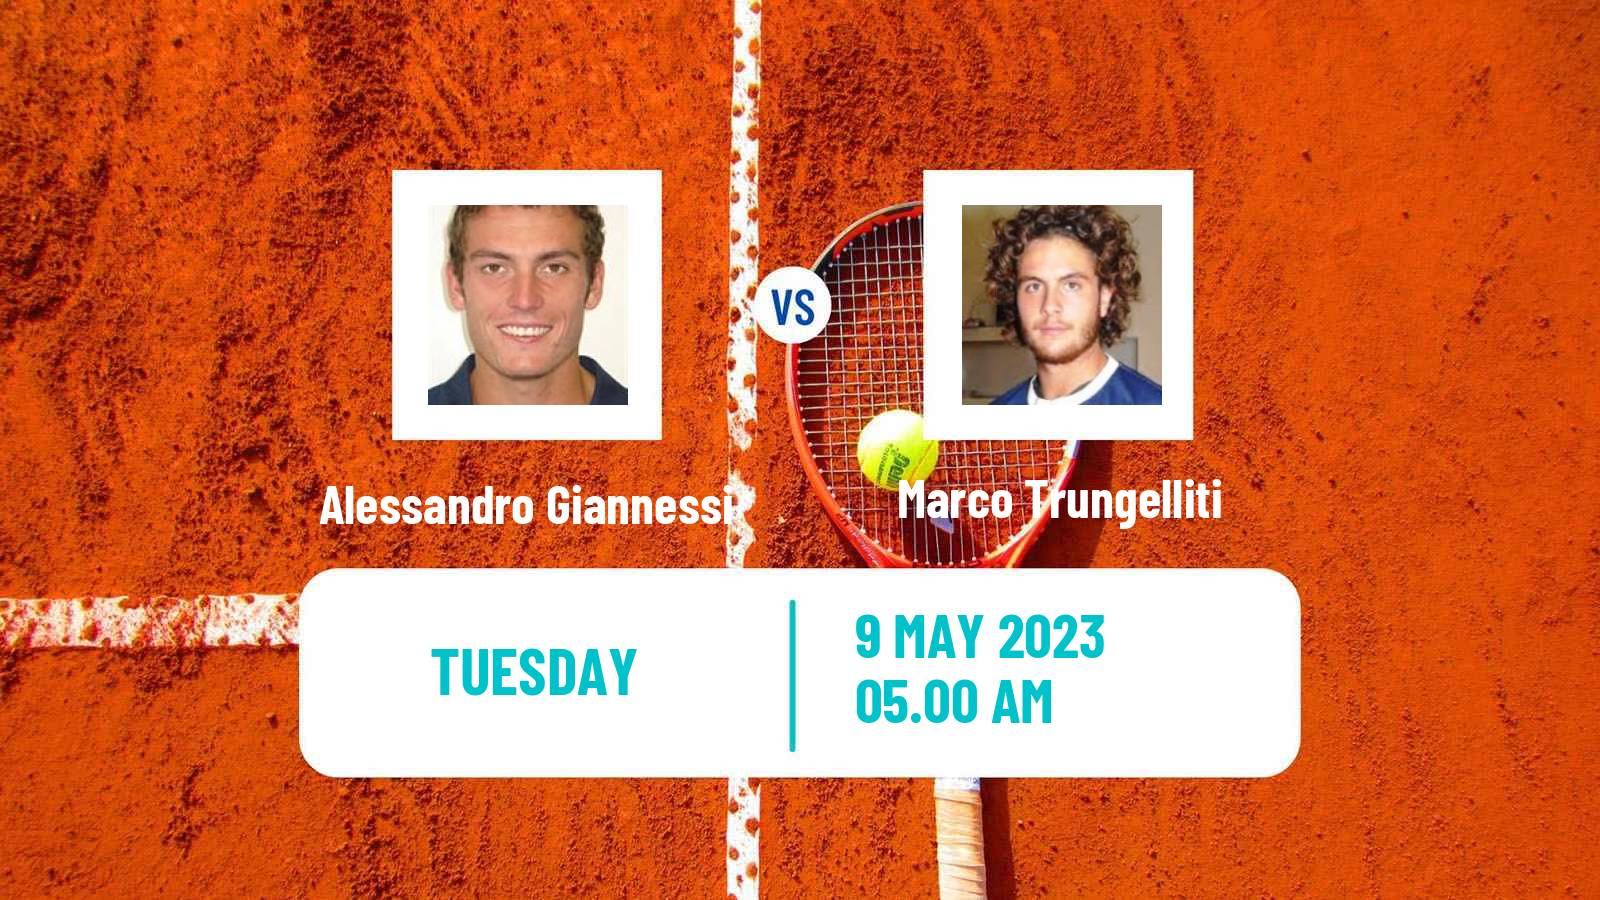 Tennis ATP Challenger Alessandro Giannessi - Marco Trungelliti